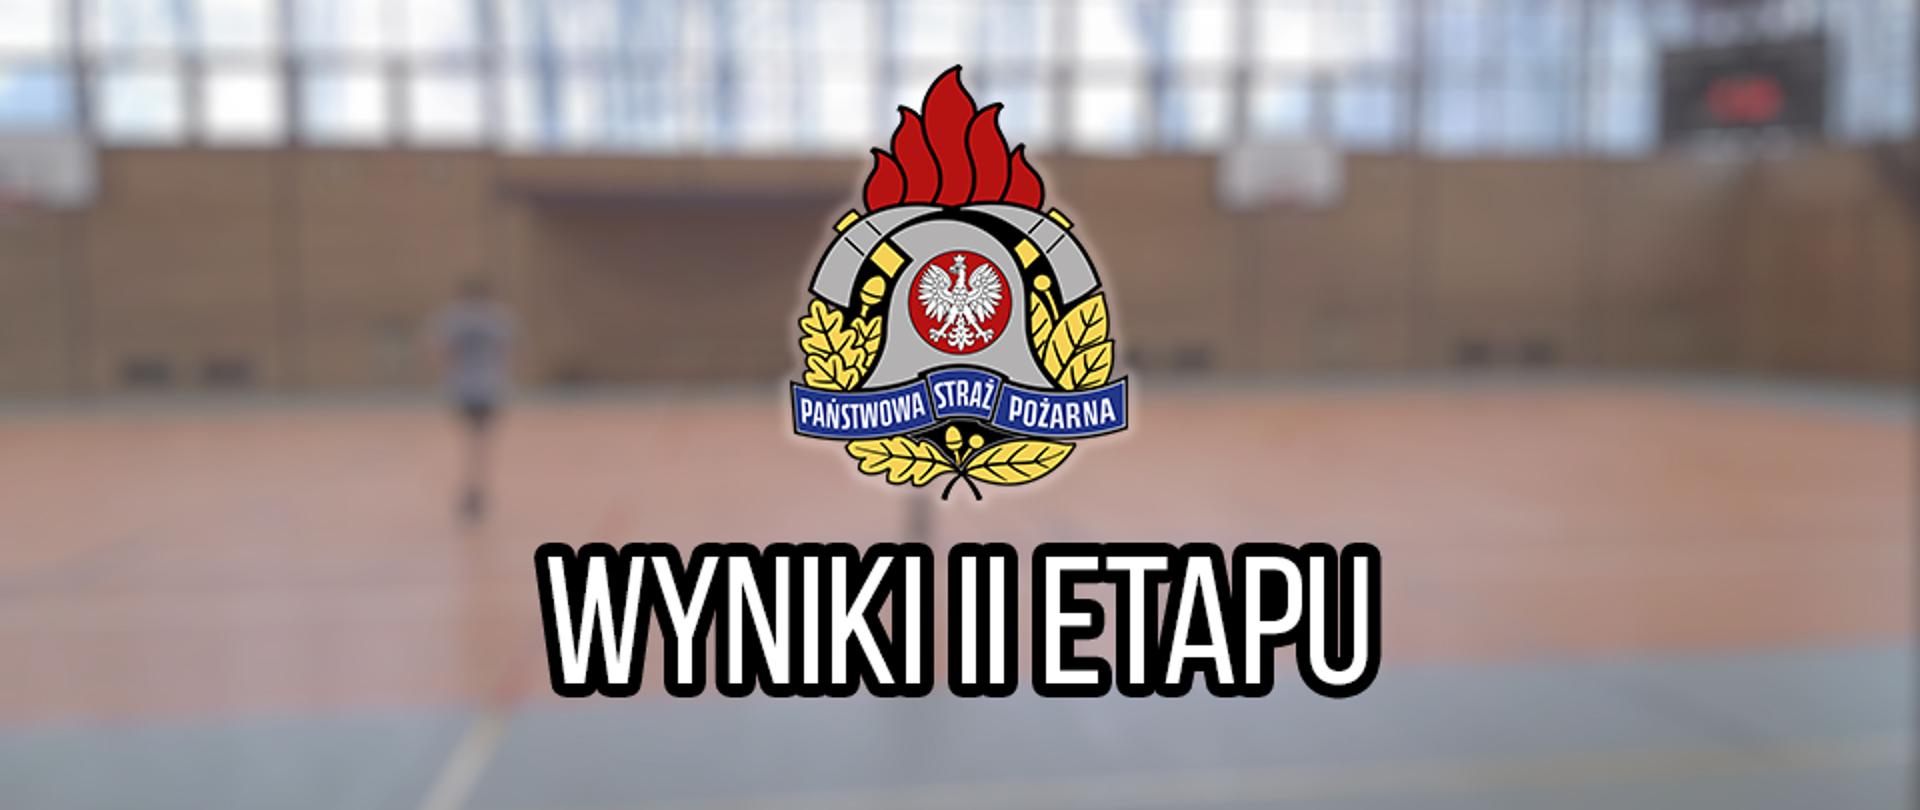 Napis: wyniki II etapu oraz logo Państwowej Straży Pożarnej